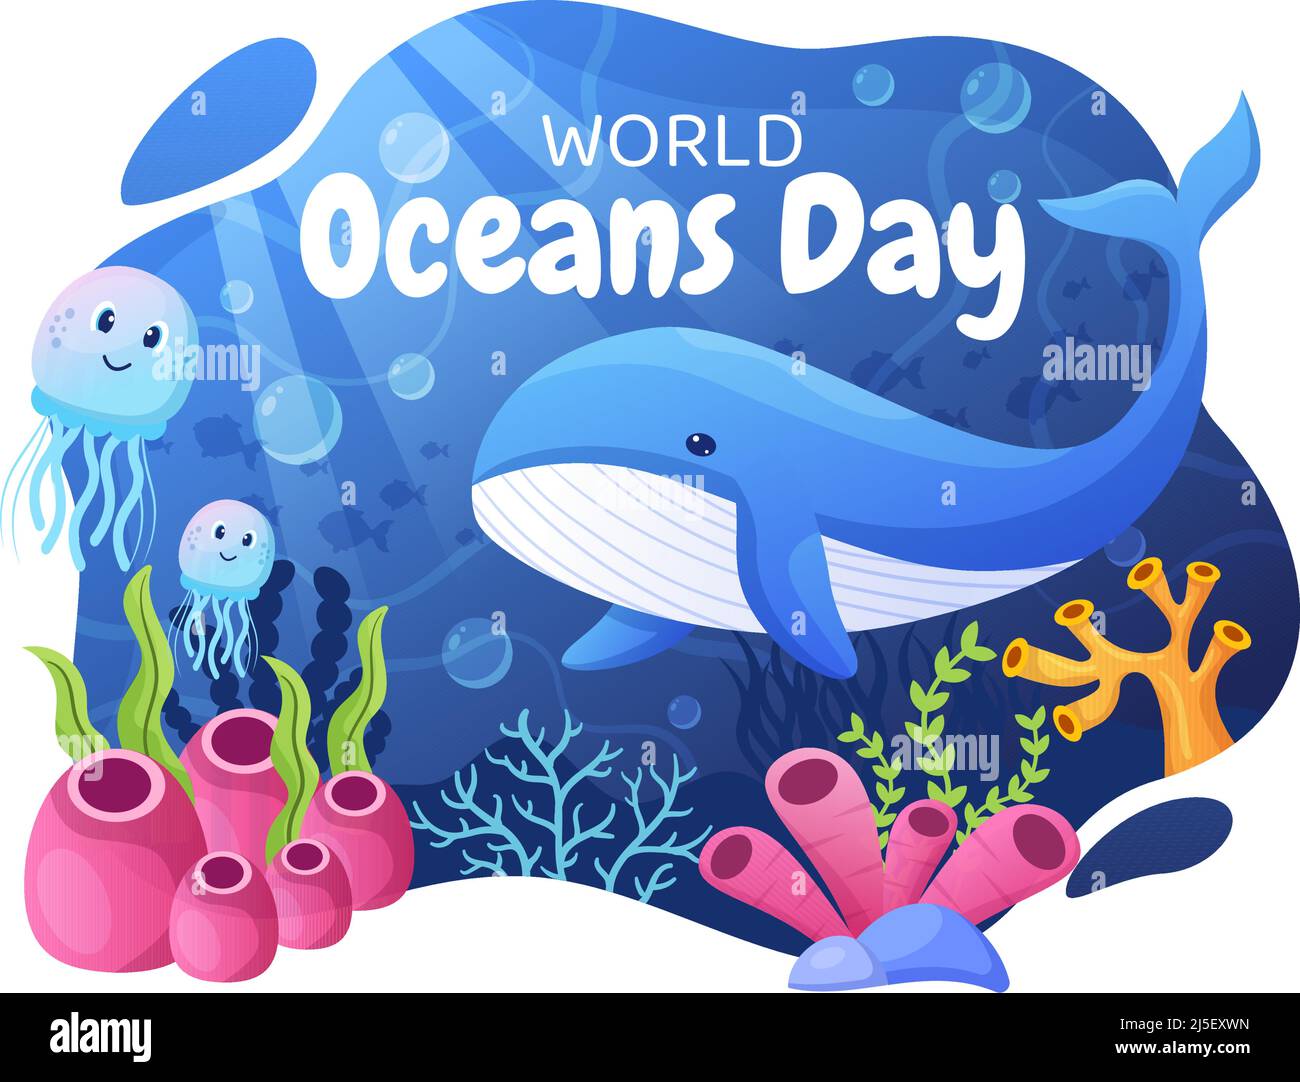 Cartoon-Illustration zum Weltmeerkunde mit Unterwasserlandschaften, verschiedenen Fischtieren, Korallen und Meerespflanzen, die sich dem Schutz oder Erhalt widmen Stock Vektor